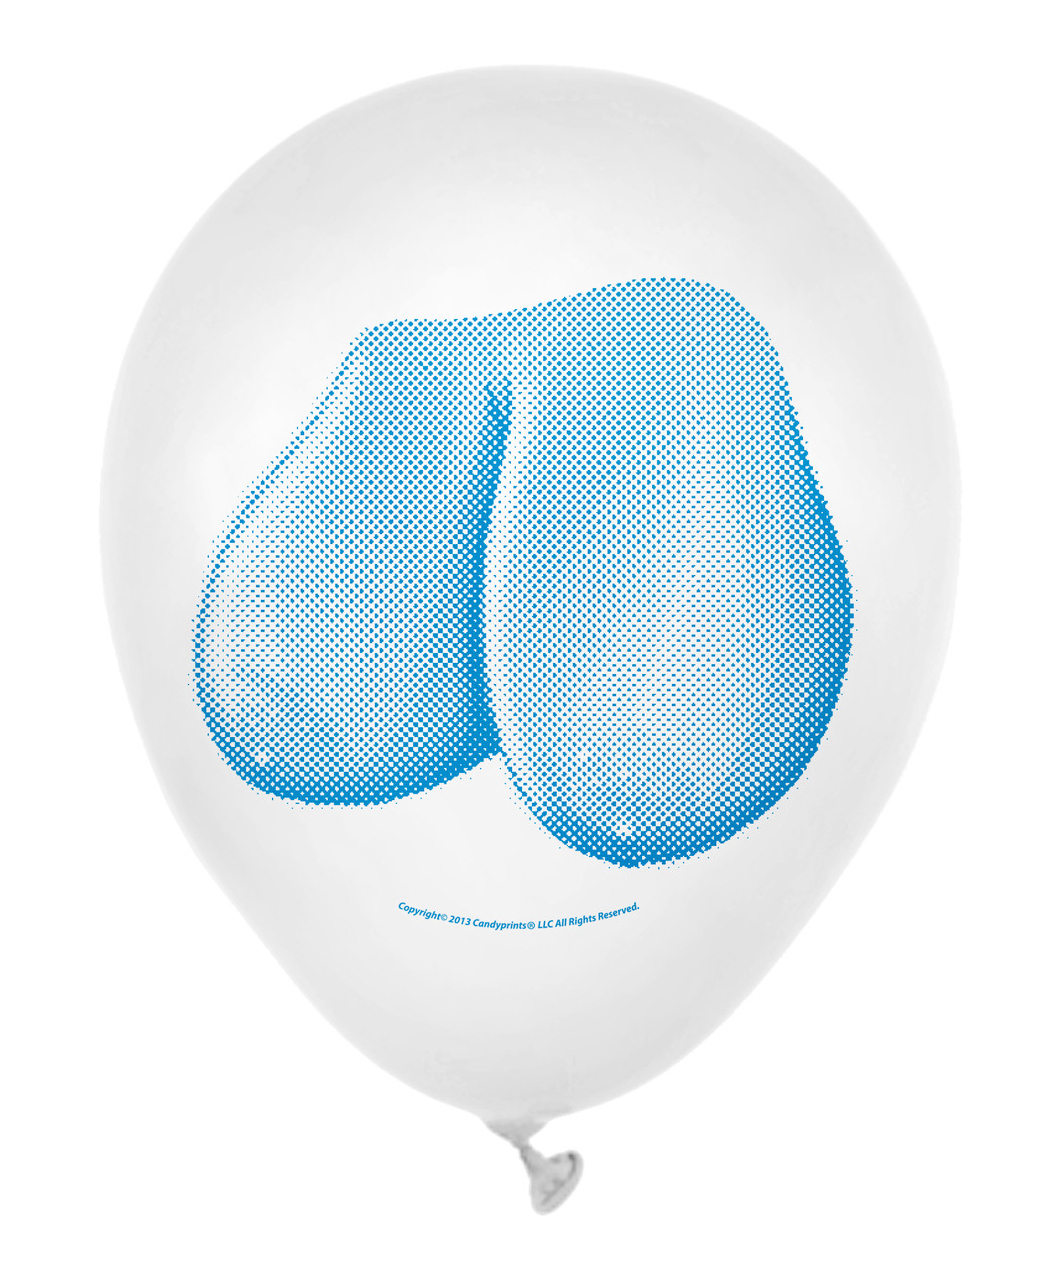 Little Genie Dirty Balloons Booby guminiai balionai (8 vnt.)